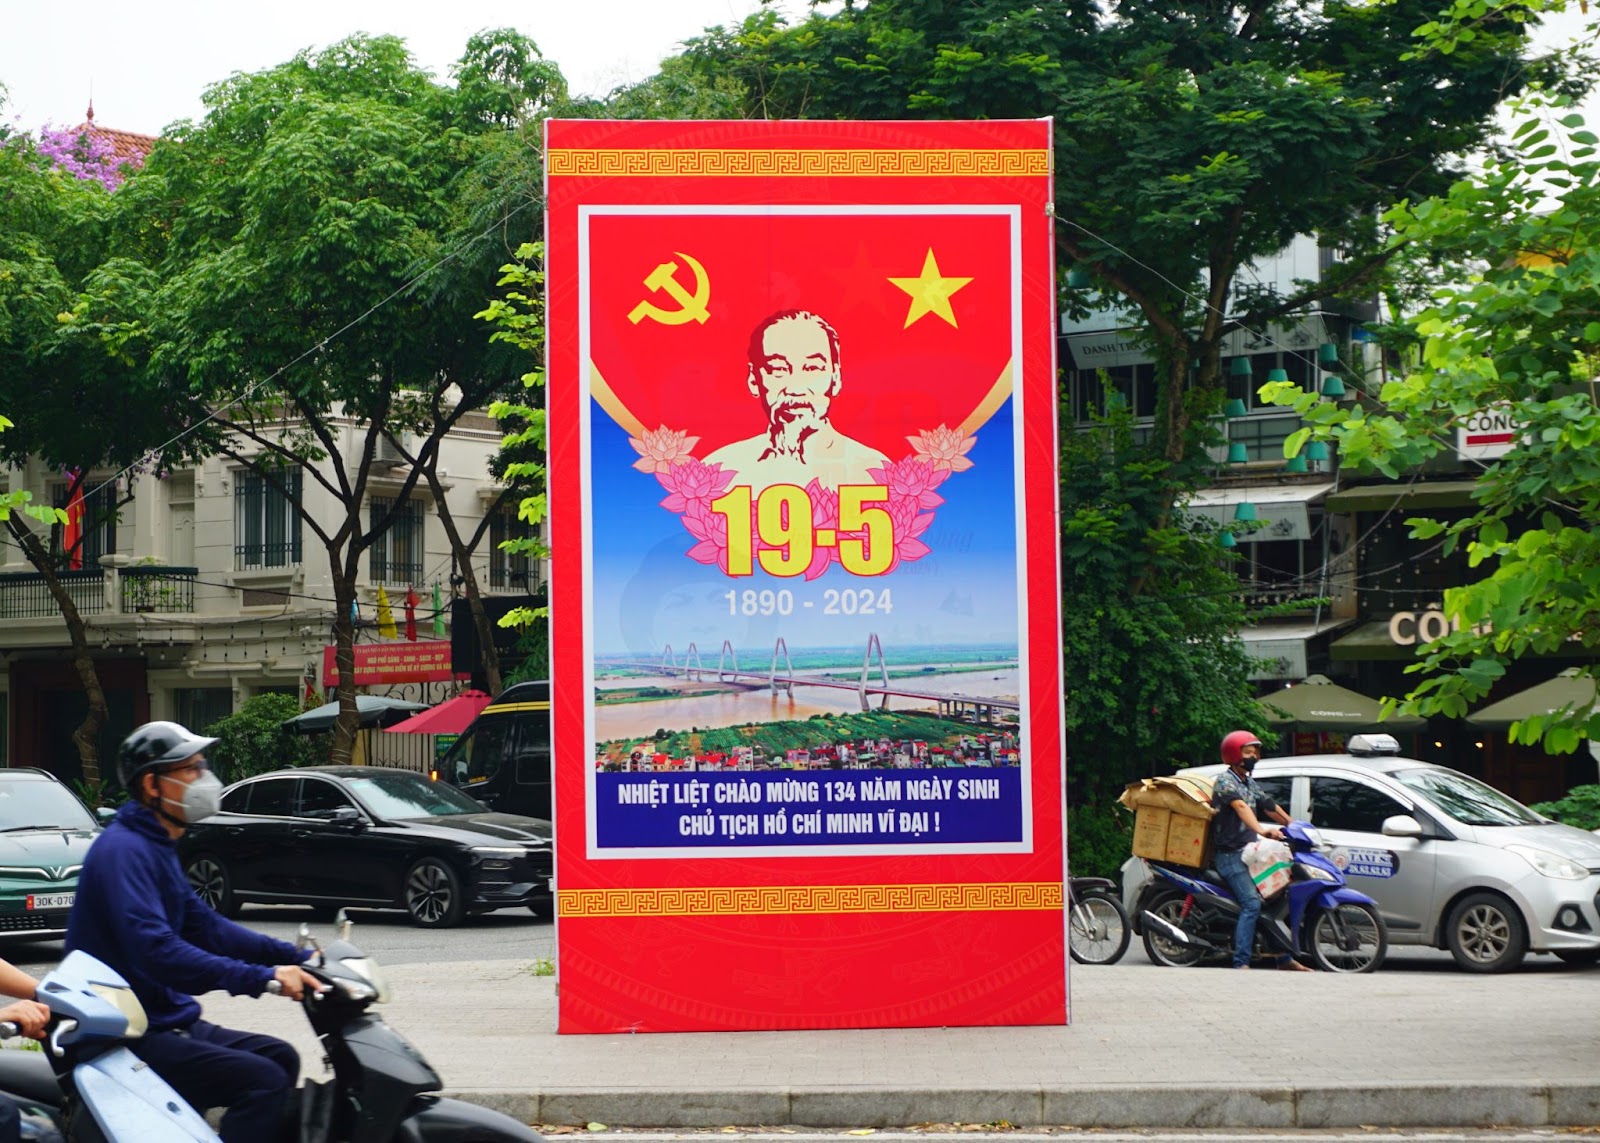 Hà Nội rợp sắc cờ hoa kỷ niệm ngày sinh Chủ tịch Hồ Chí Minh - Ảnh 7.